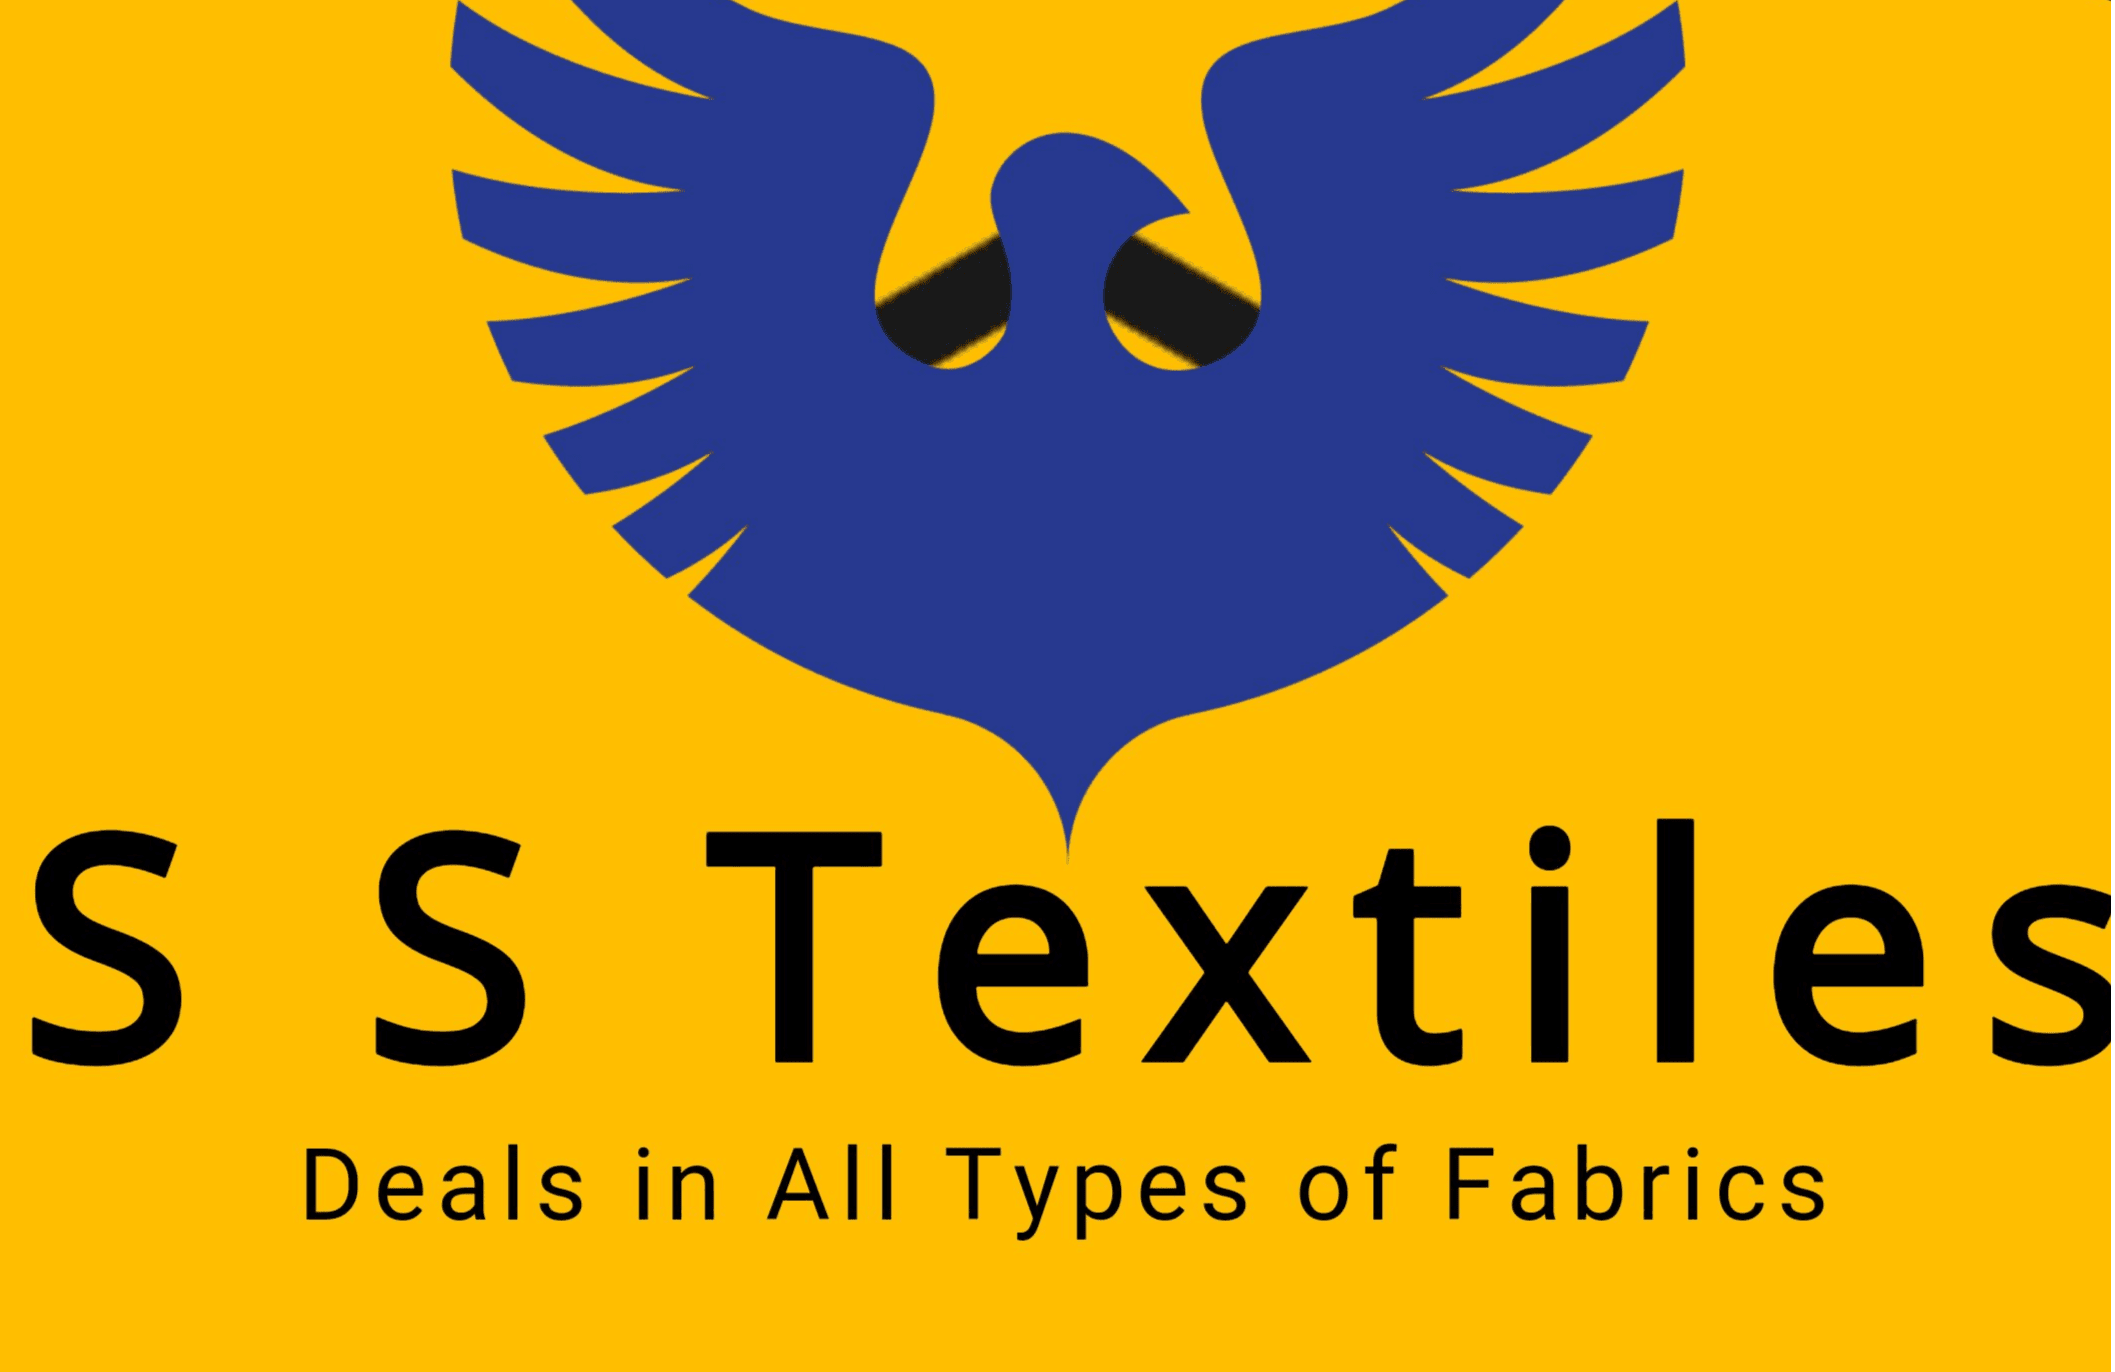 S S Textiles